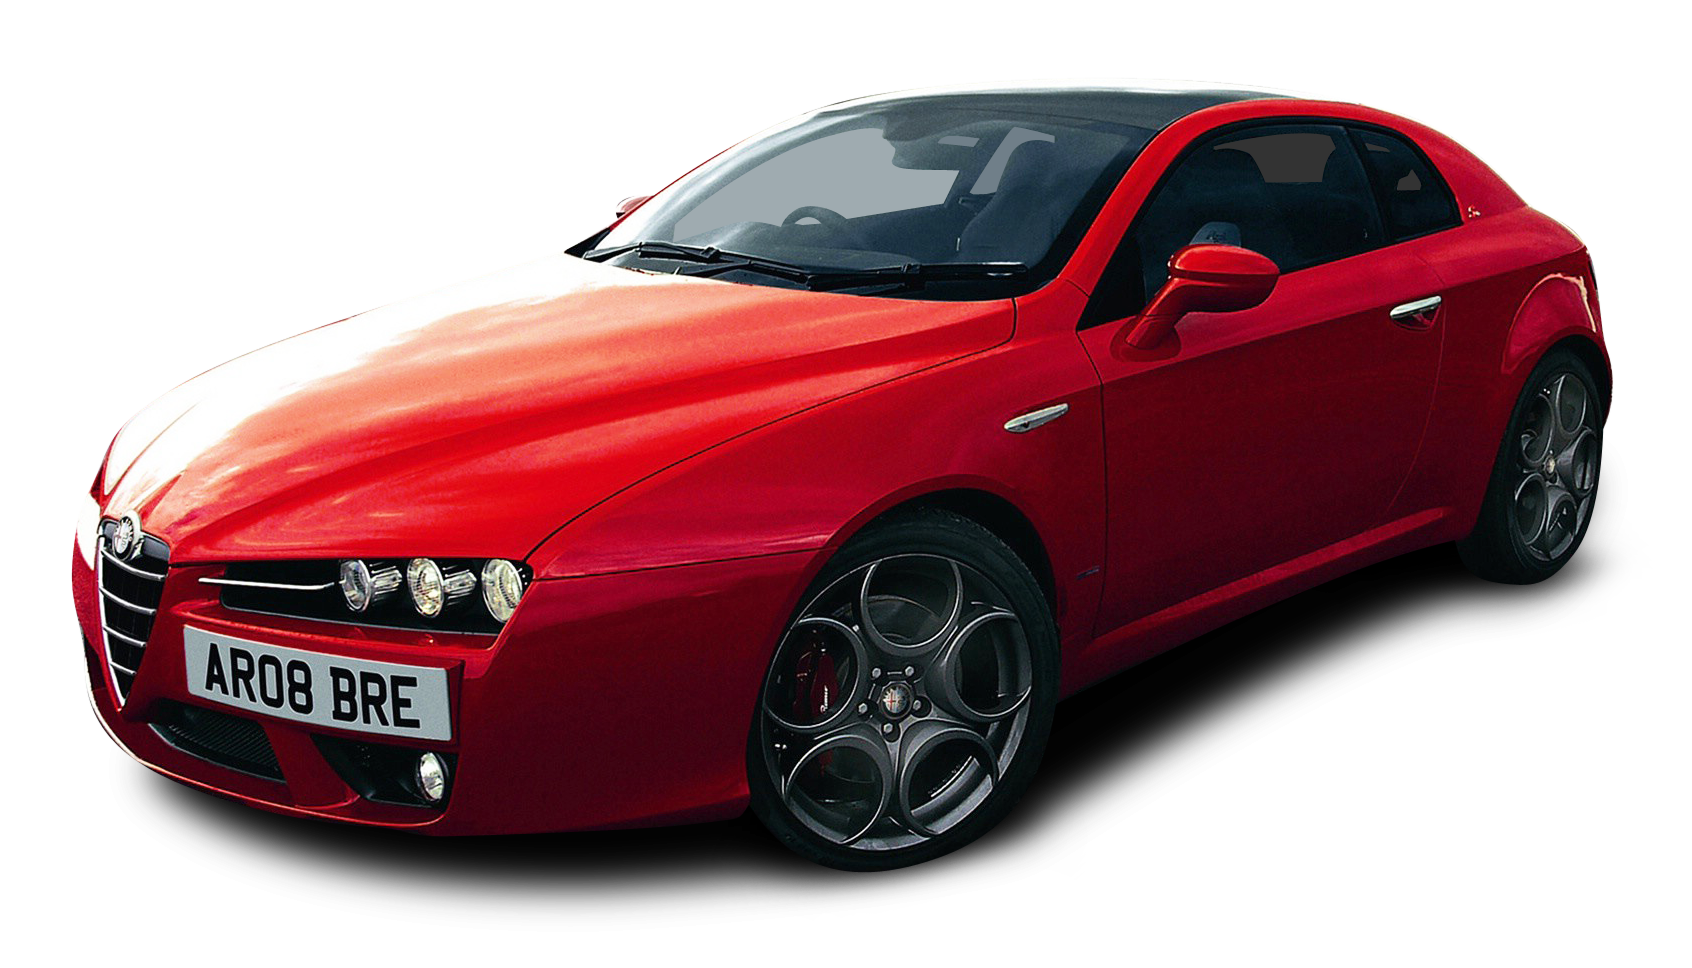 Red Alfa Romeo Brera S Car PNG Image